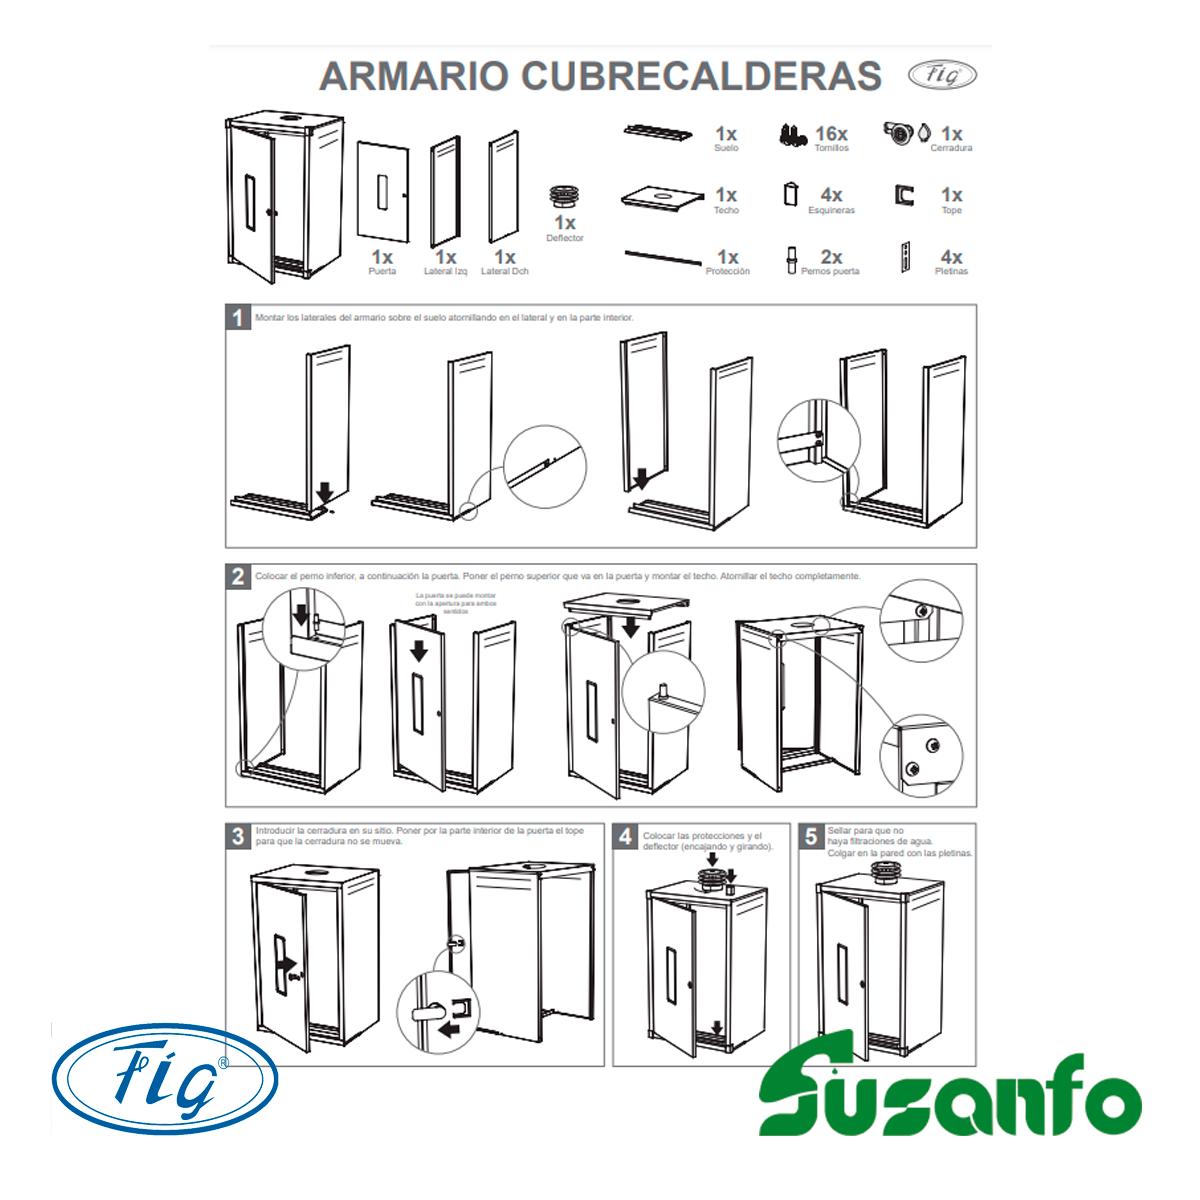 ARMARIO CUBRE CALENTADOR 1000x550x450 - Equipamientos Ramos